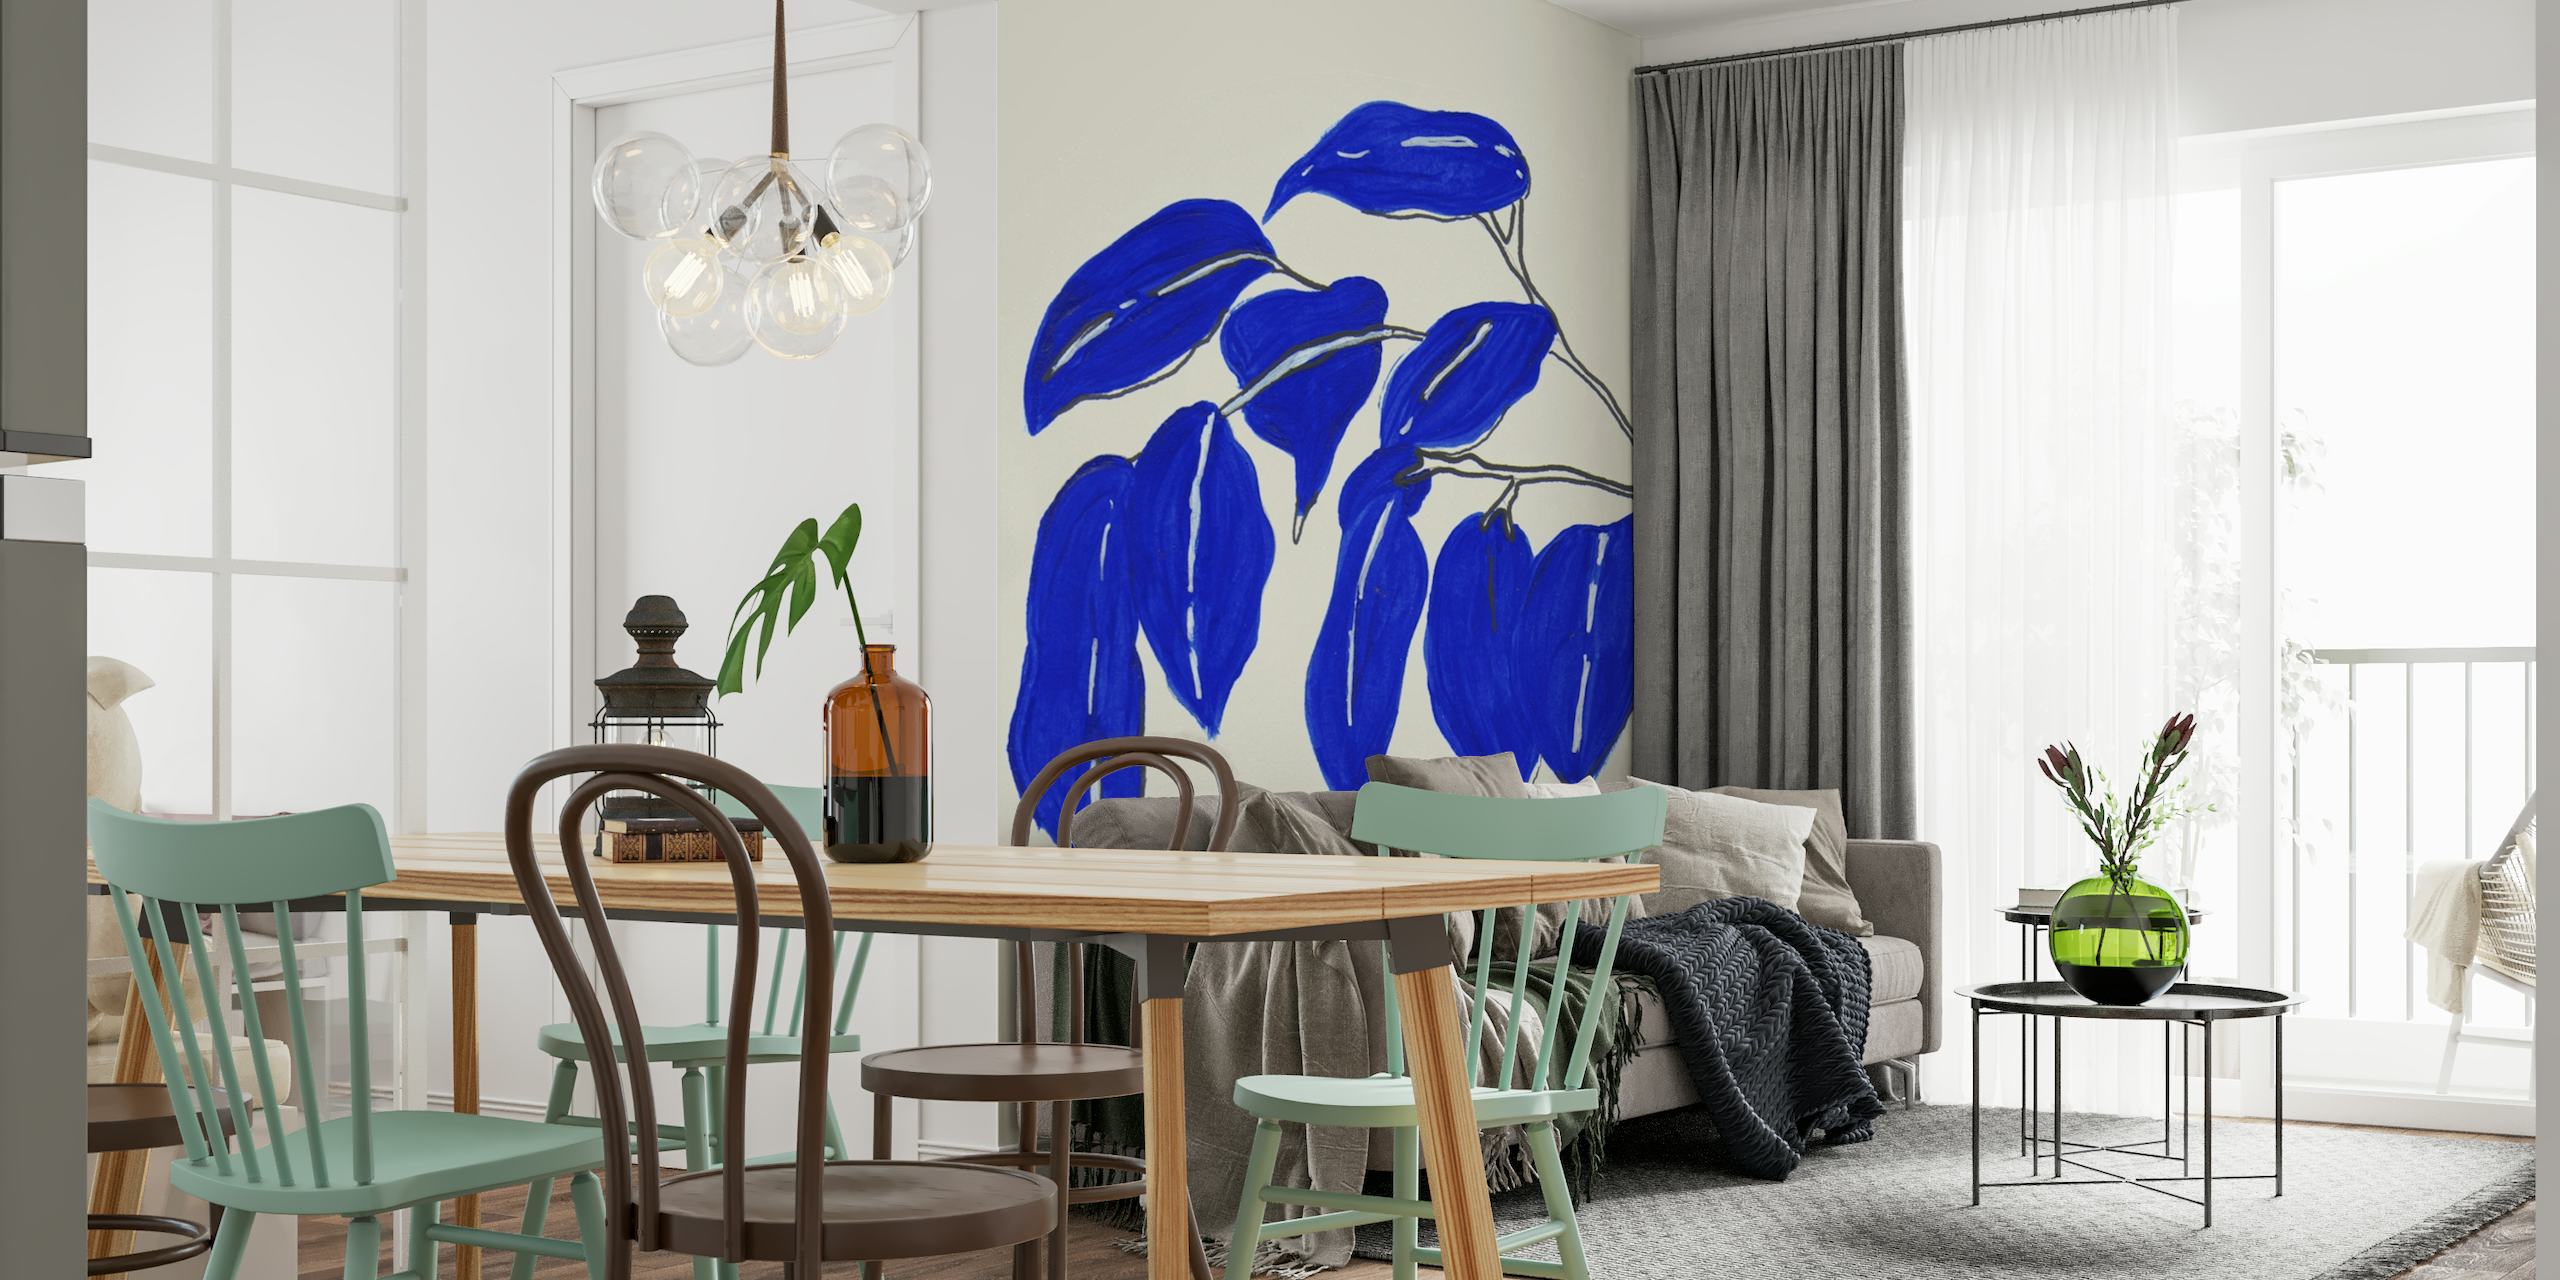 De abstracte blauwe illustratie van ficusbladeren op een muurschildering